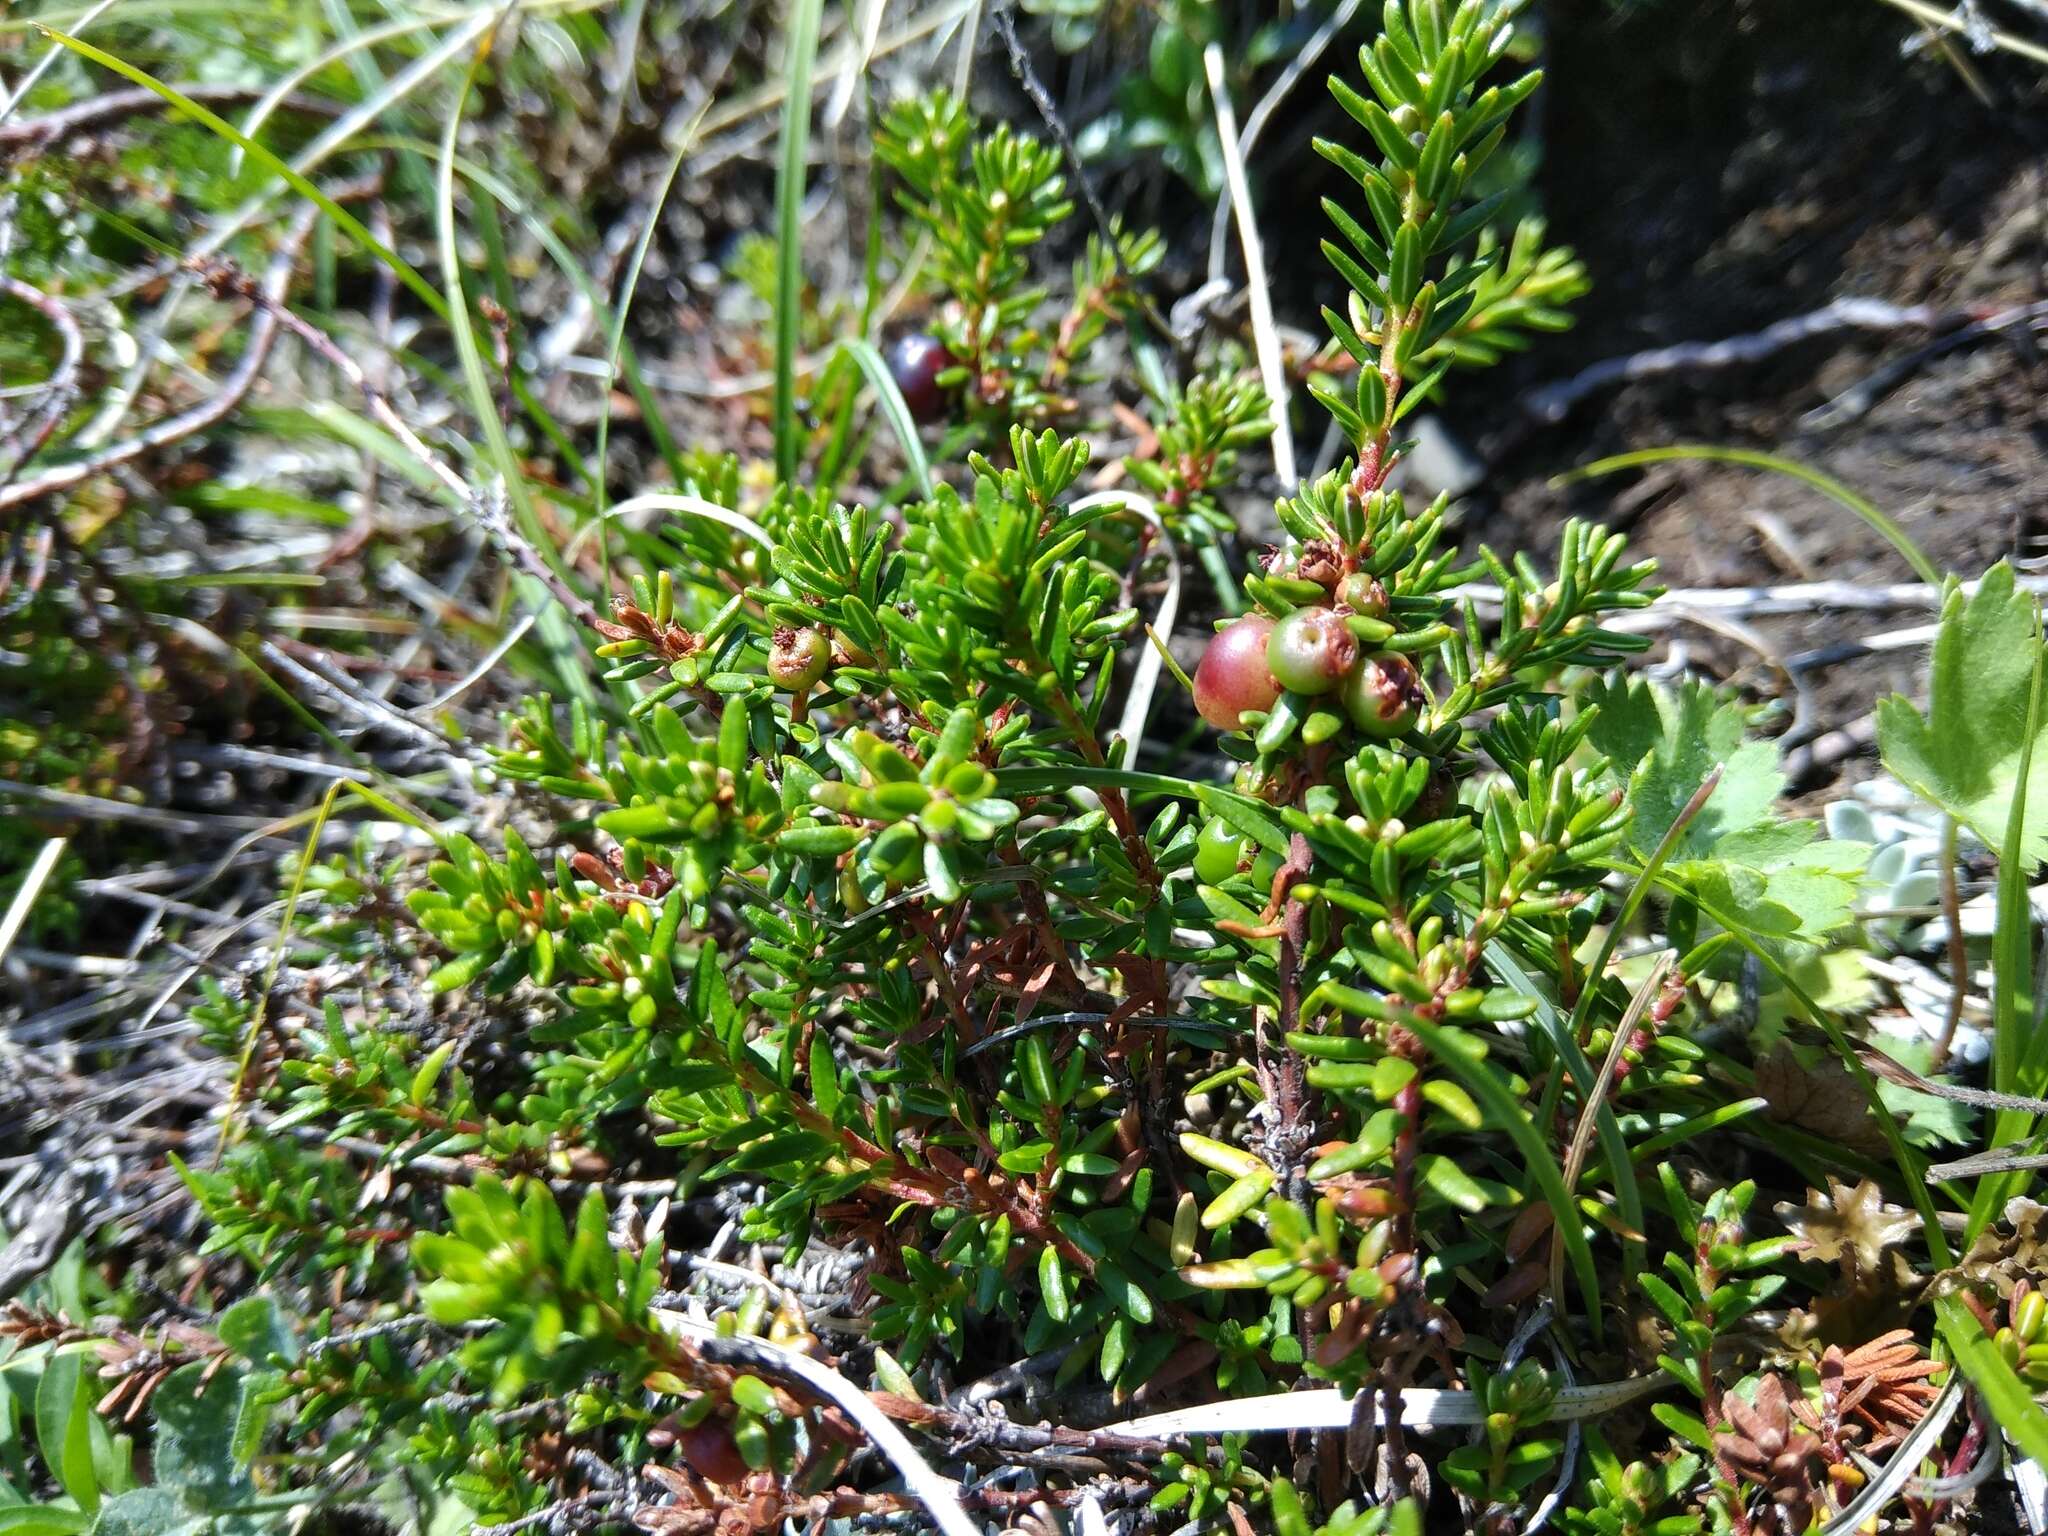 Image of Empetrum nigrum subsp. caucasicum (Juz.) V. B. Kuvaev